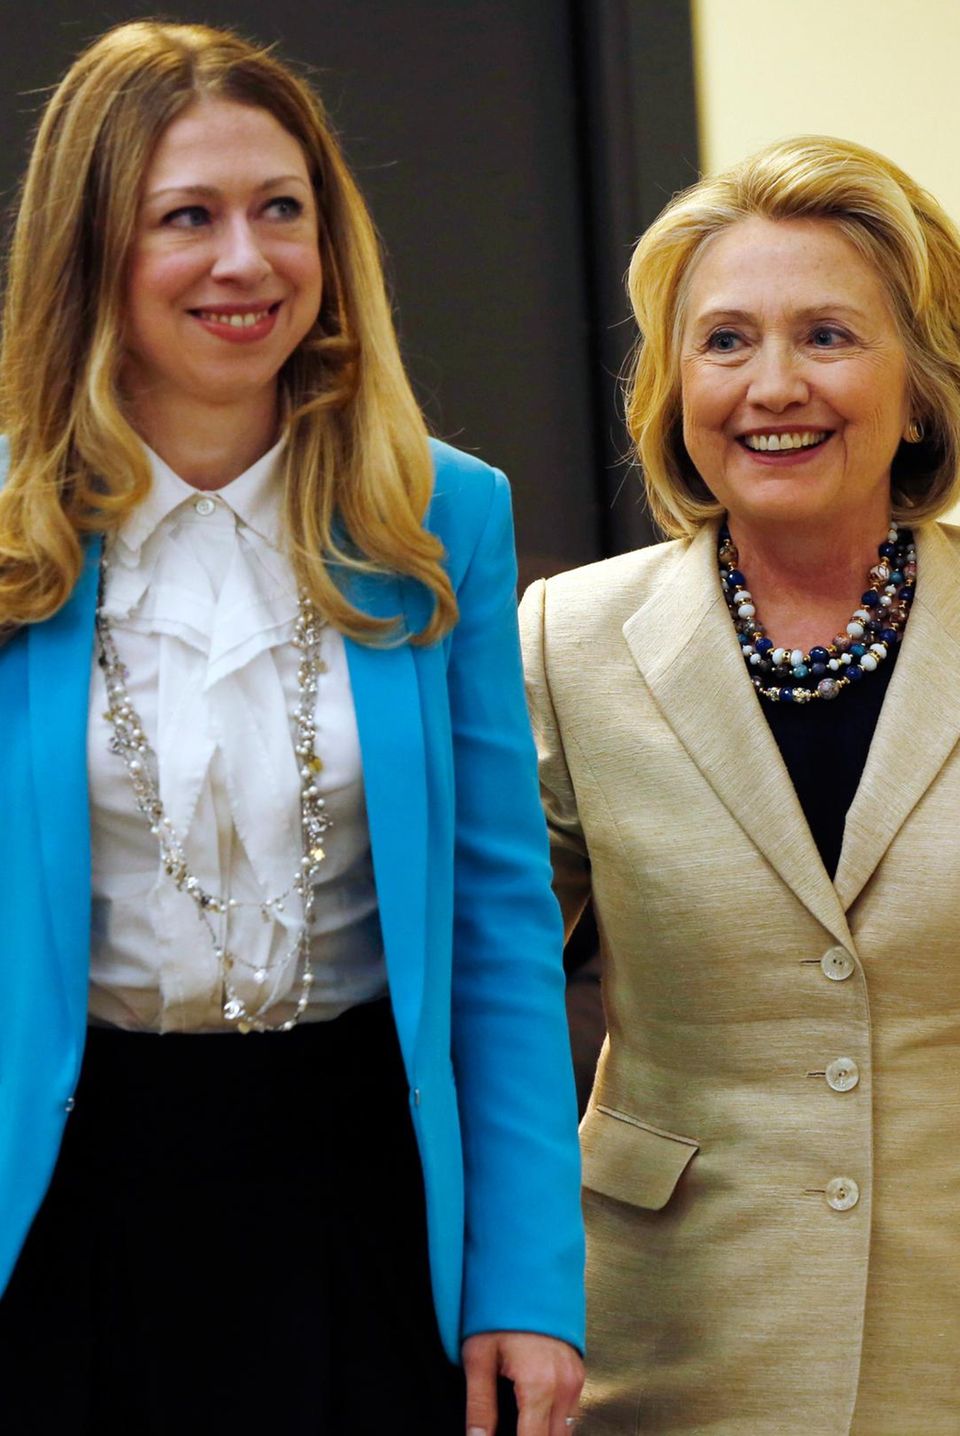 Chelsea Clinton, Hillary Clinton